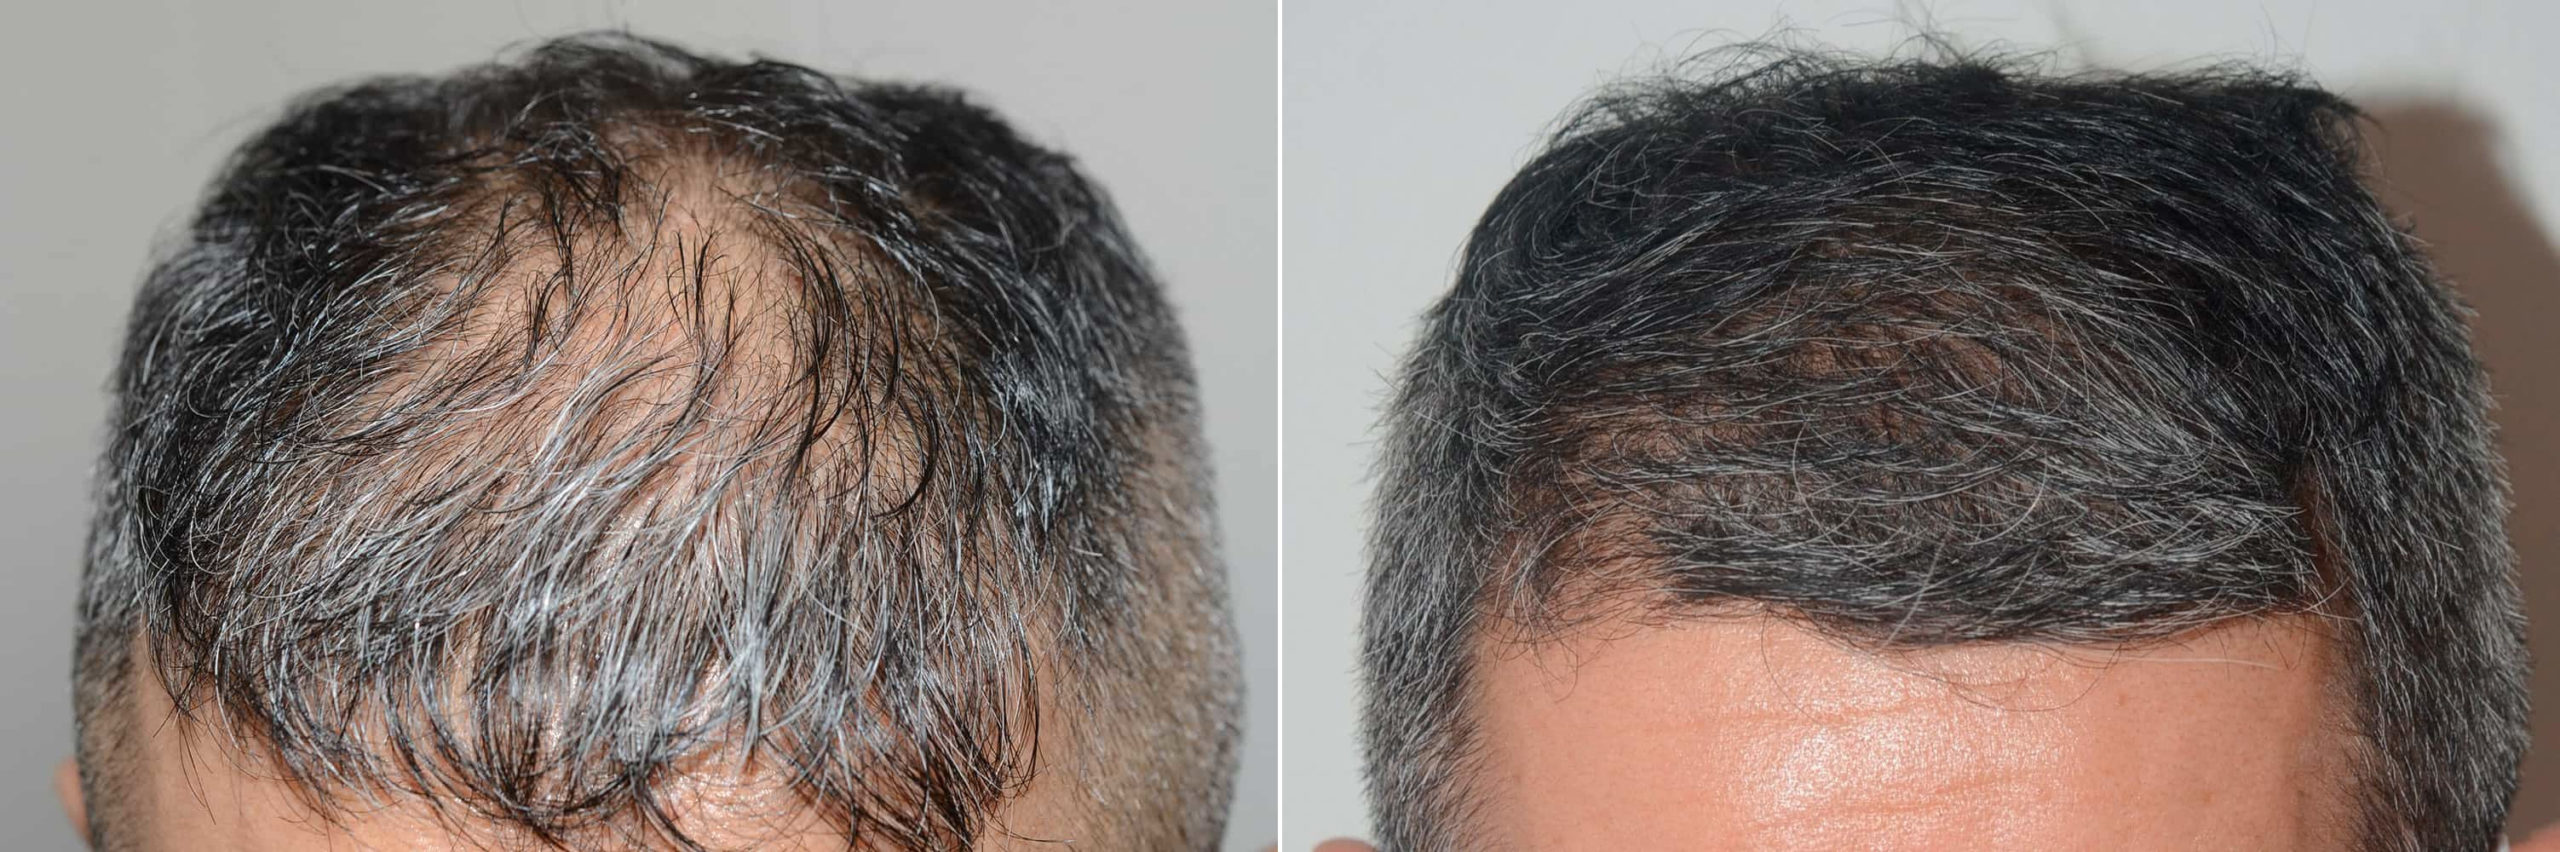 Hair Transplants for Men photos | Miami, FL | Patient121062